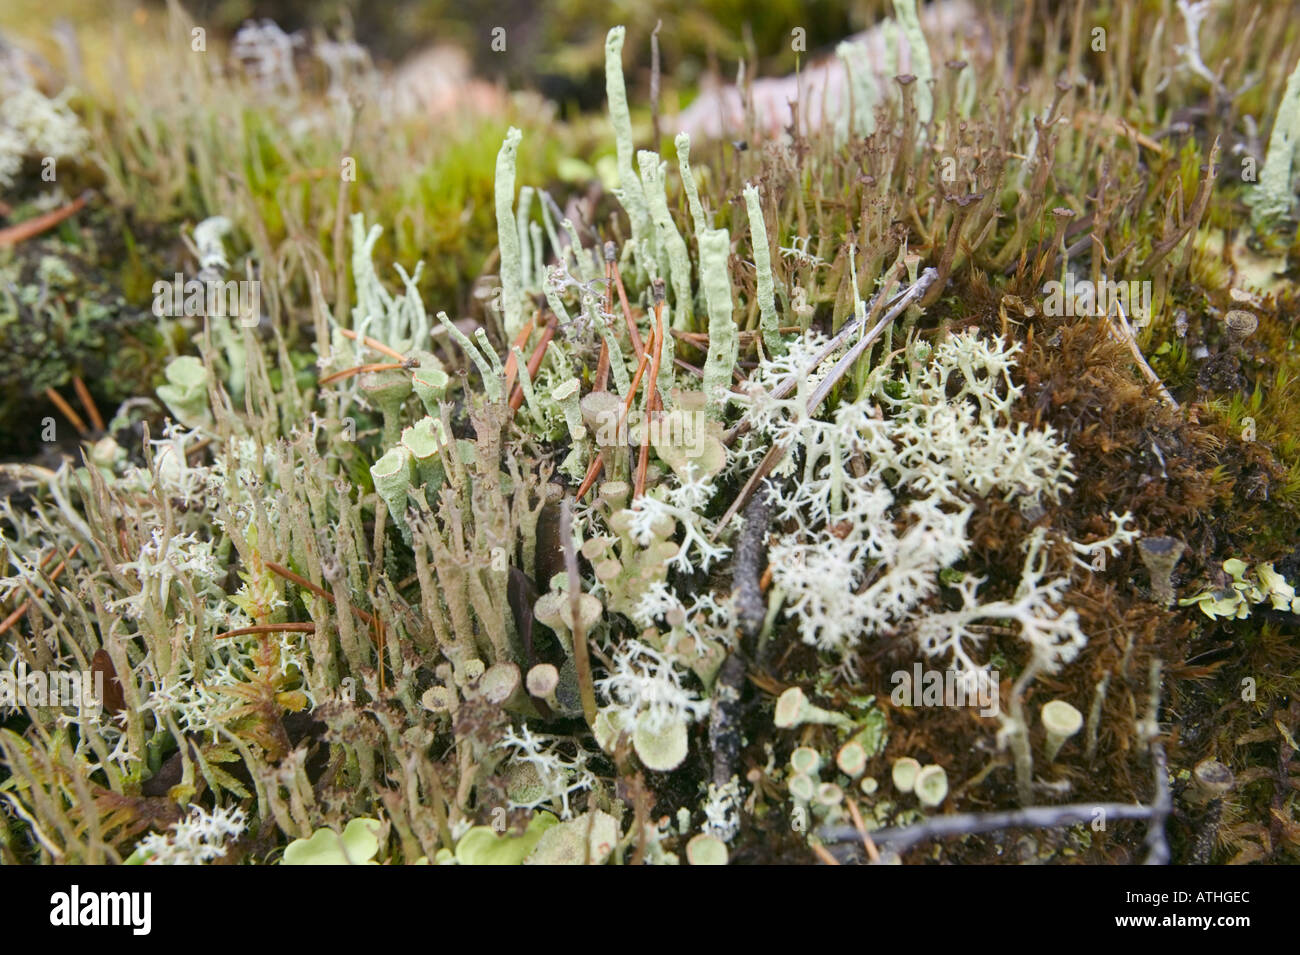 Les lichens sur le sol forestier, Laponie, Suède. Banque D'Images